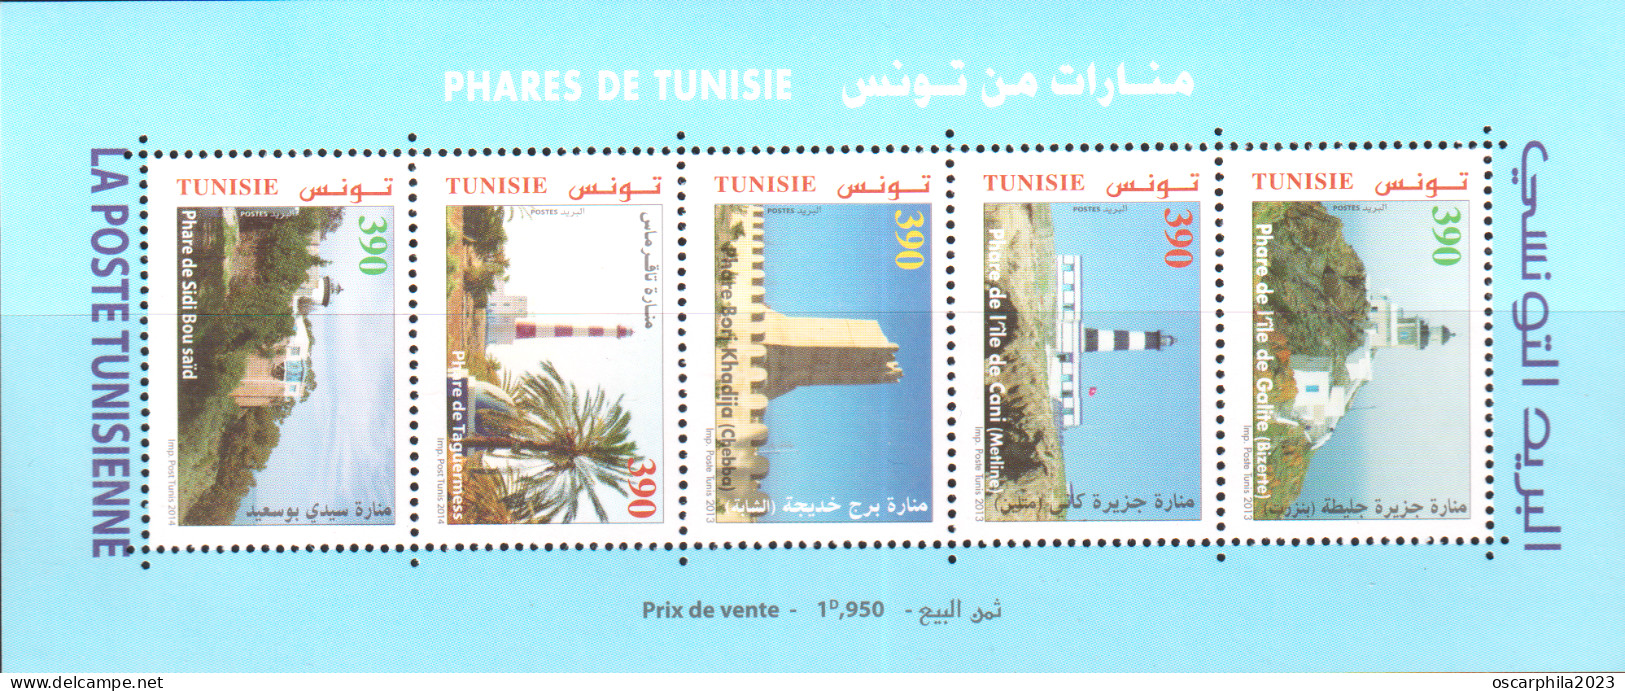 2013 - Tunisie - Phares De Tunisie -  (feuillet) / 5 V - MNH***** - Tunisia